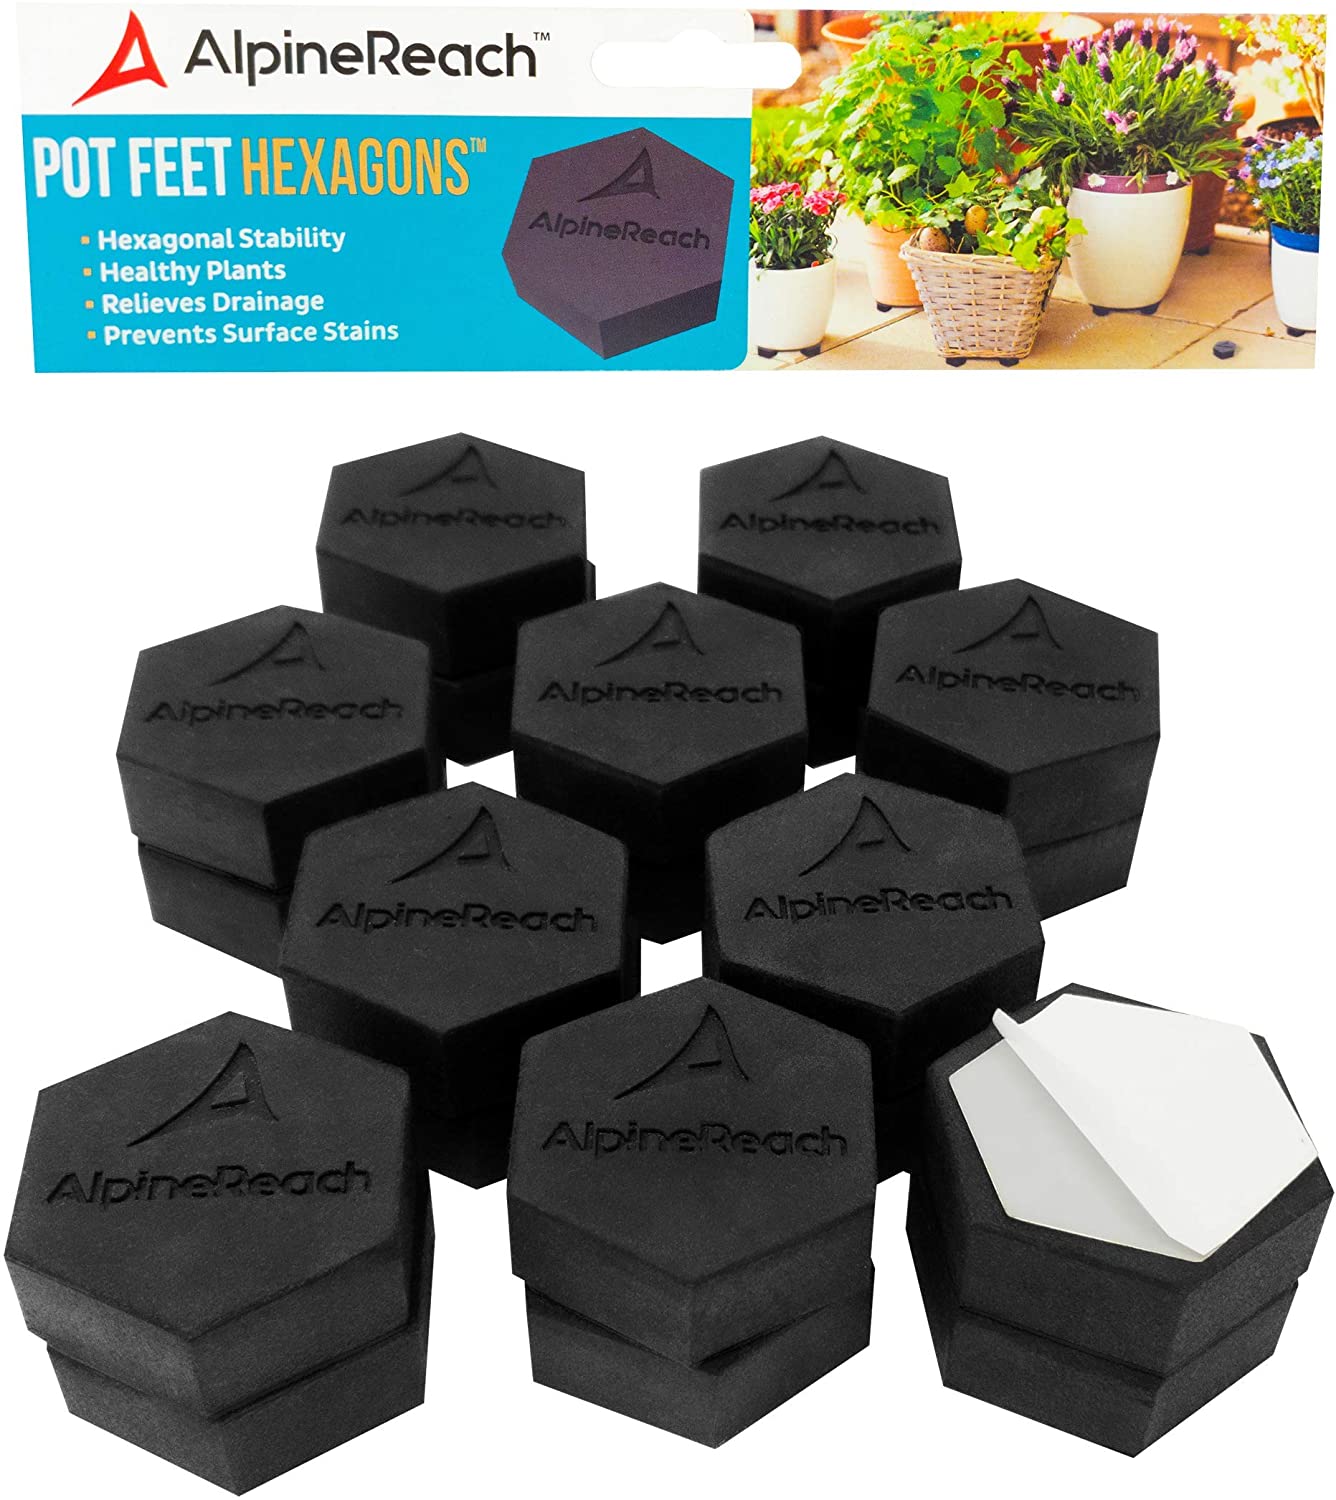 AlpineReach 20 Pack Pot Feet Hexagons & Adhesive Pads - AlpineReach